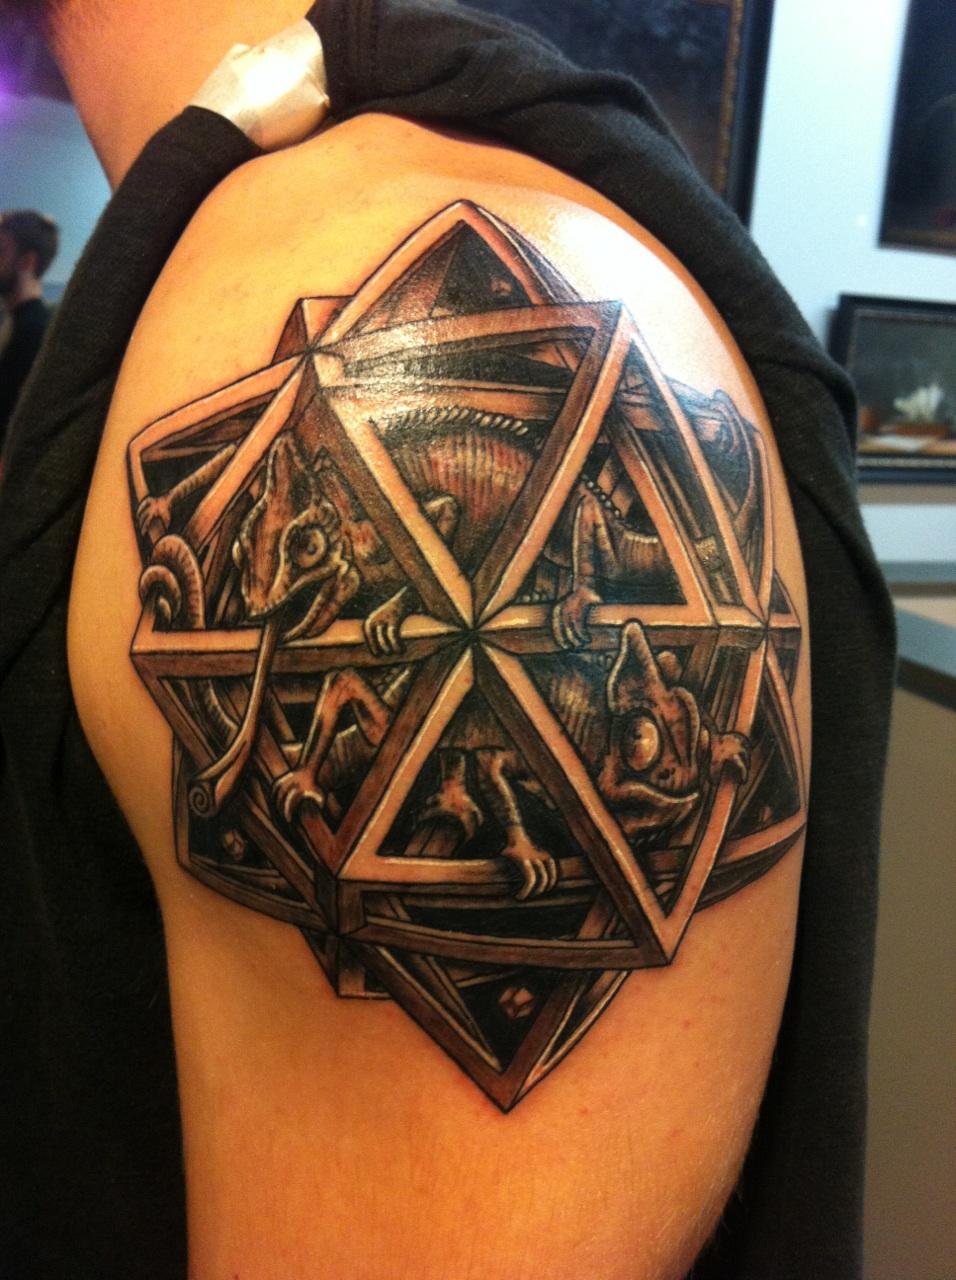 Dodecahedron Chameleon Escher Tattoo On Left Shoulder By Lynn Buckner